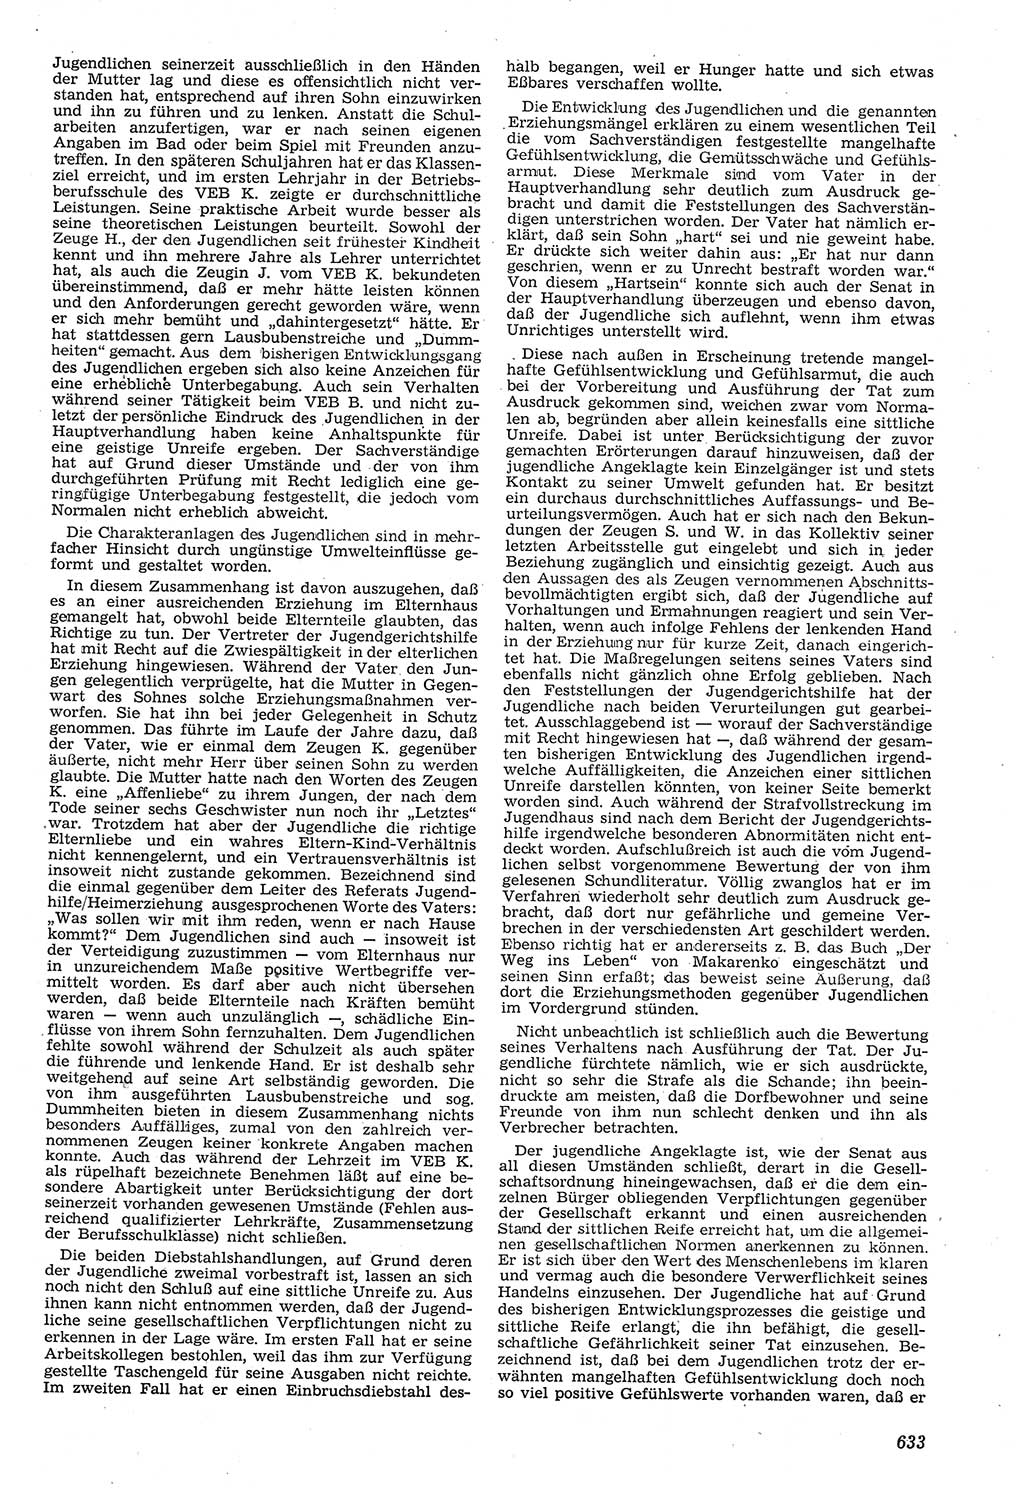 Neue Justiz (NJ), Zeitschrift für Recht und Rechtswissenschaft [Deutsche Demokratische Republik (DDR)], 11. Jahrgang 1957, Seite 633 (NJ DDR 1957, S. 633)